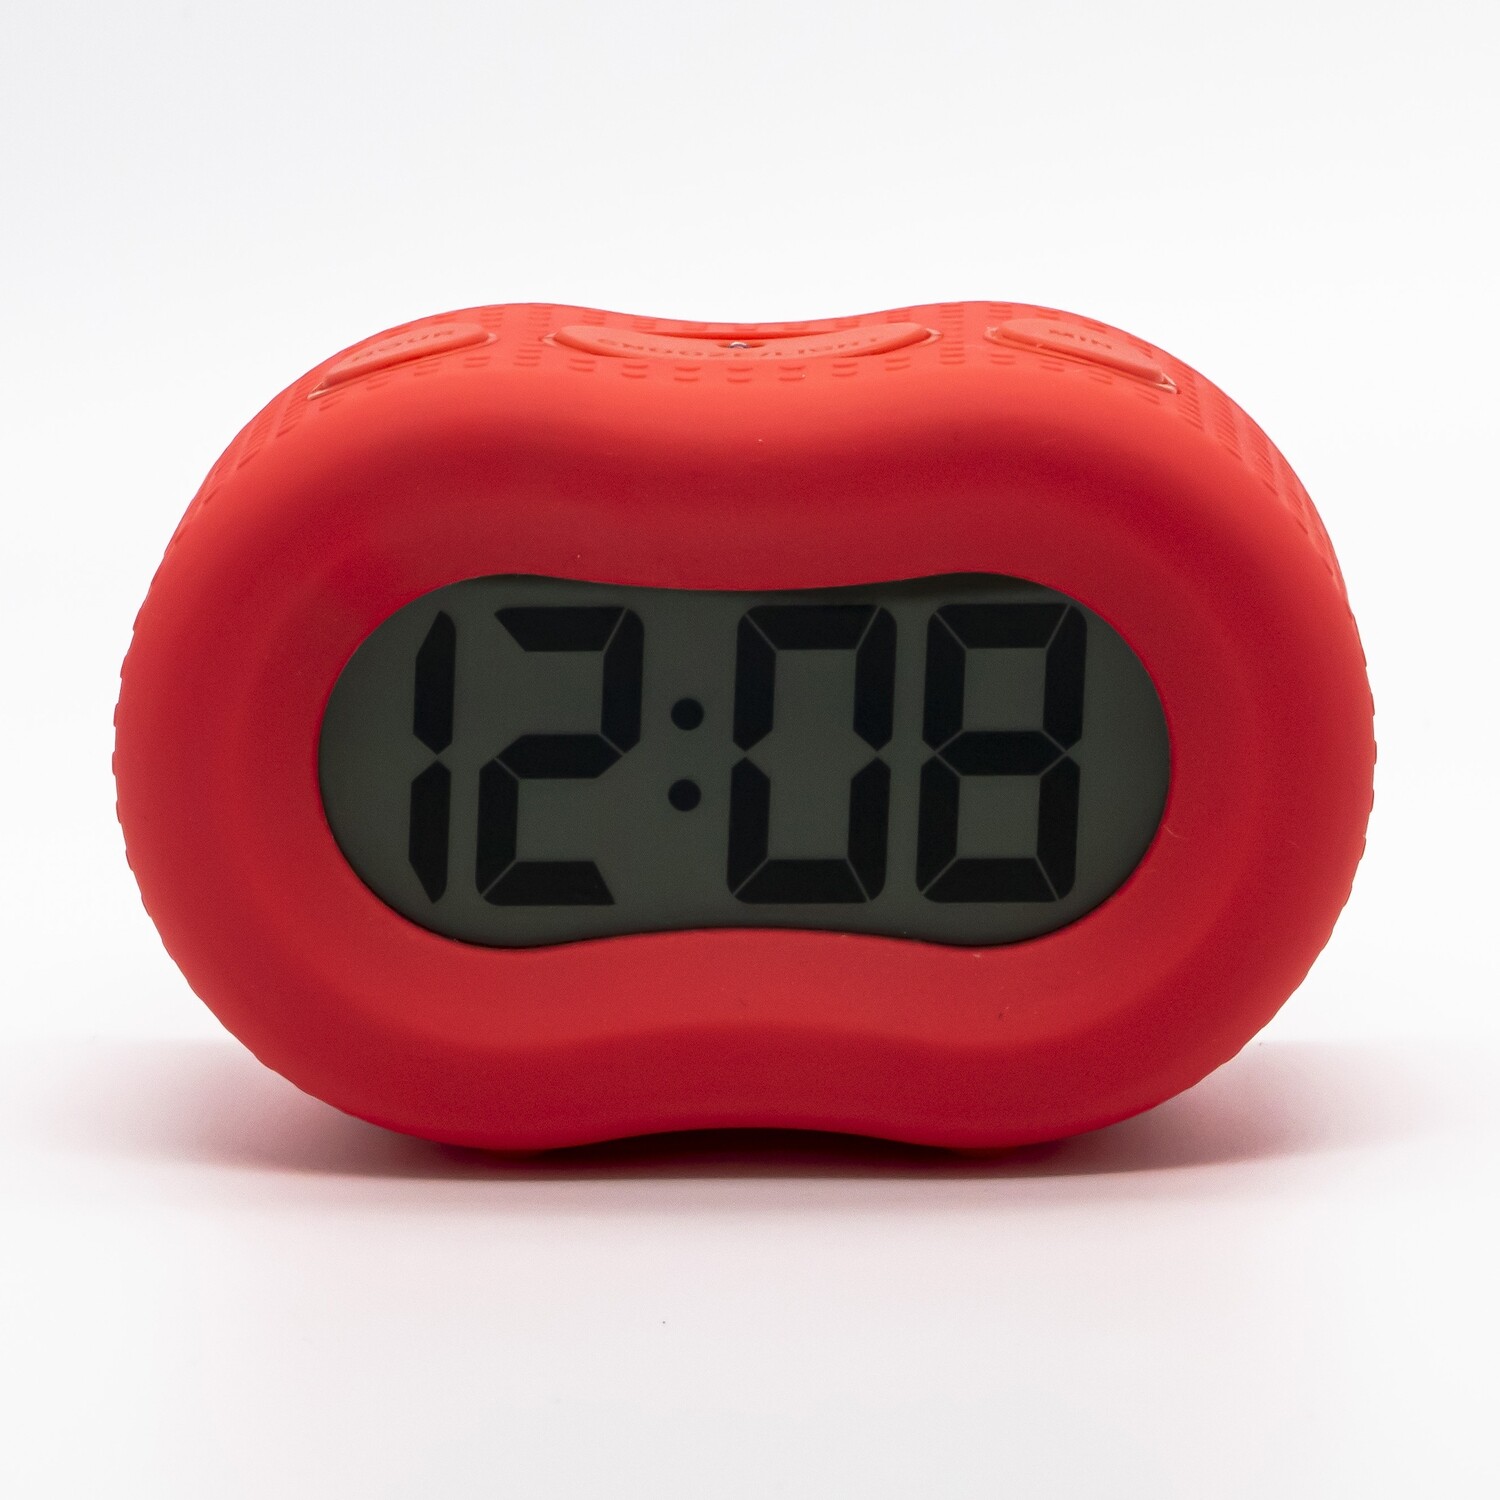 Timelink Rubber Smartlight Alarm Clock Red